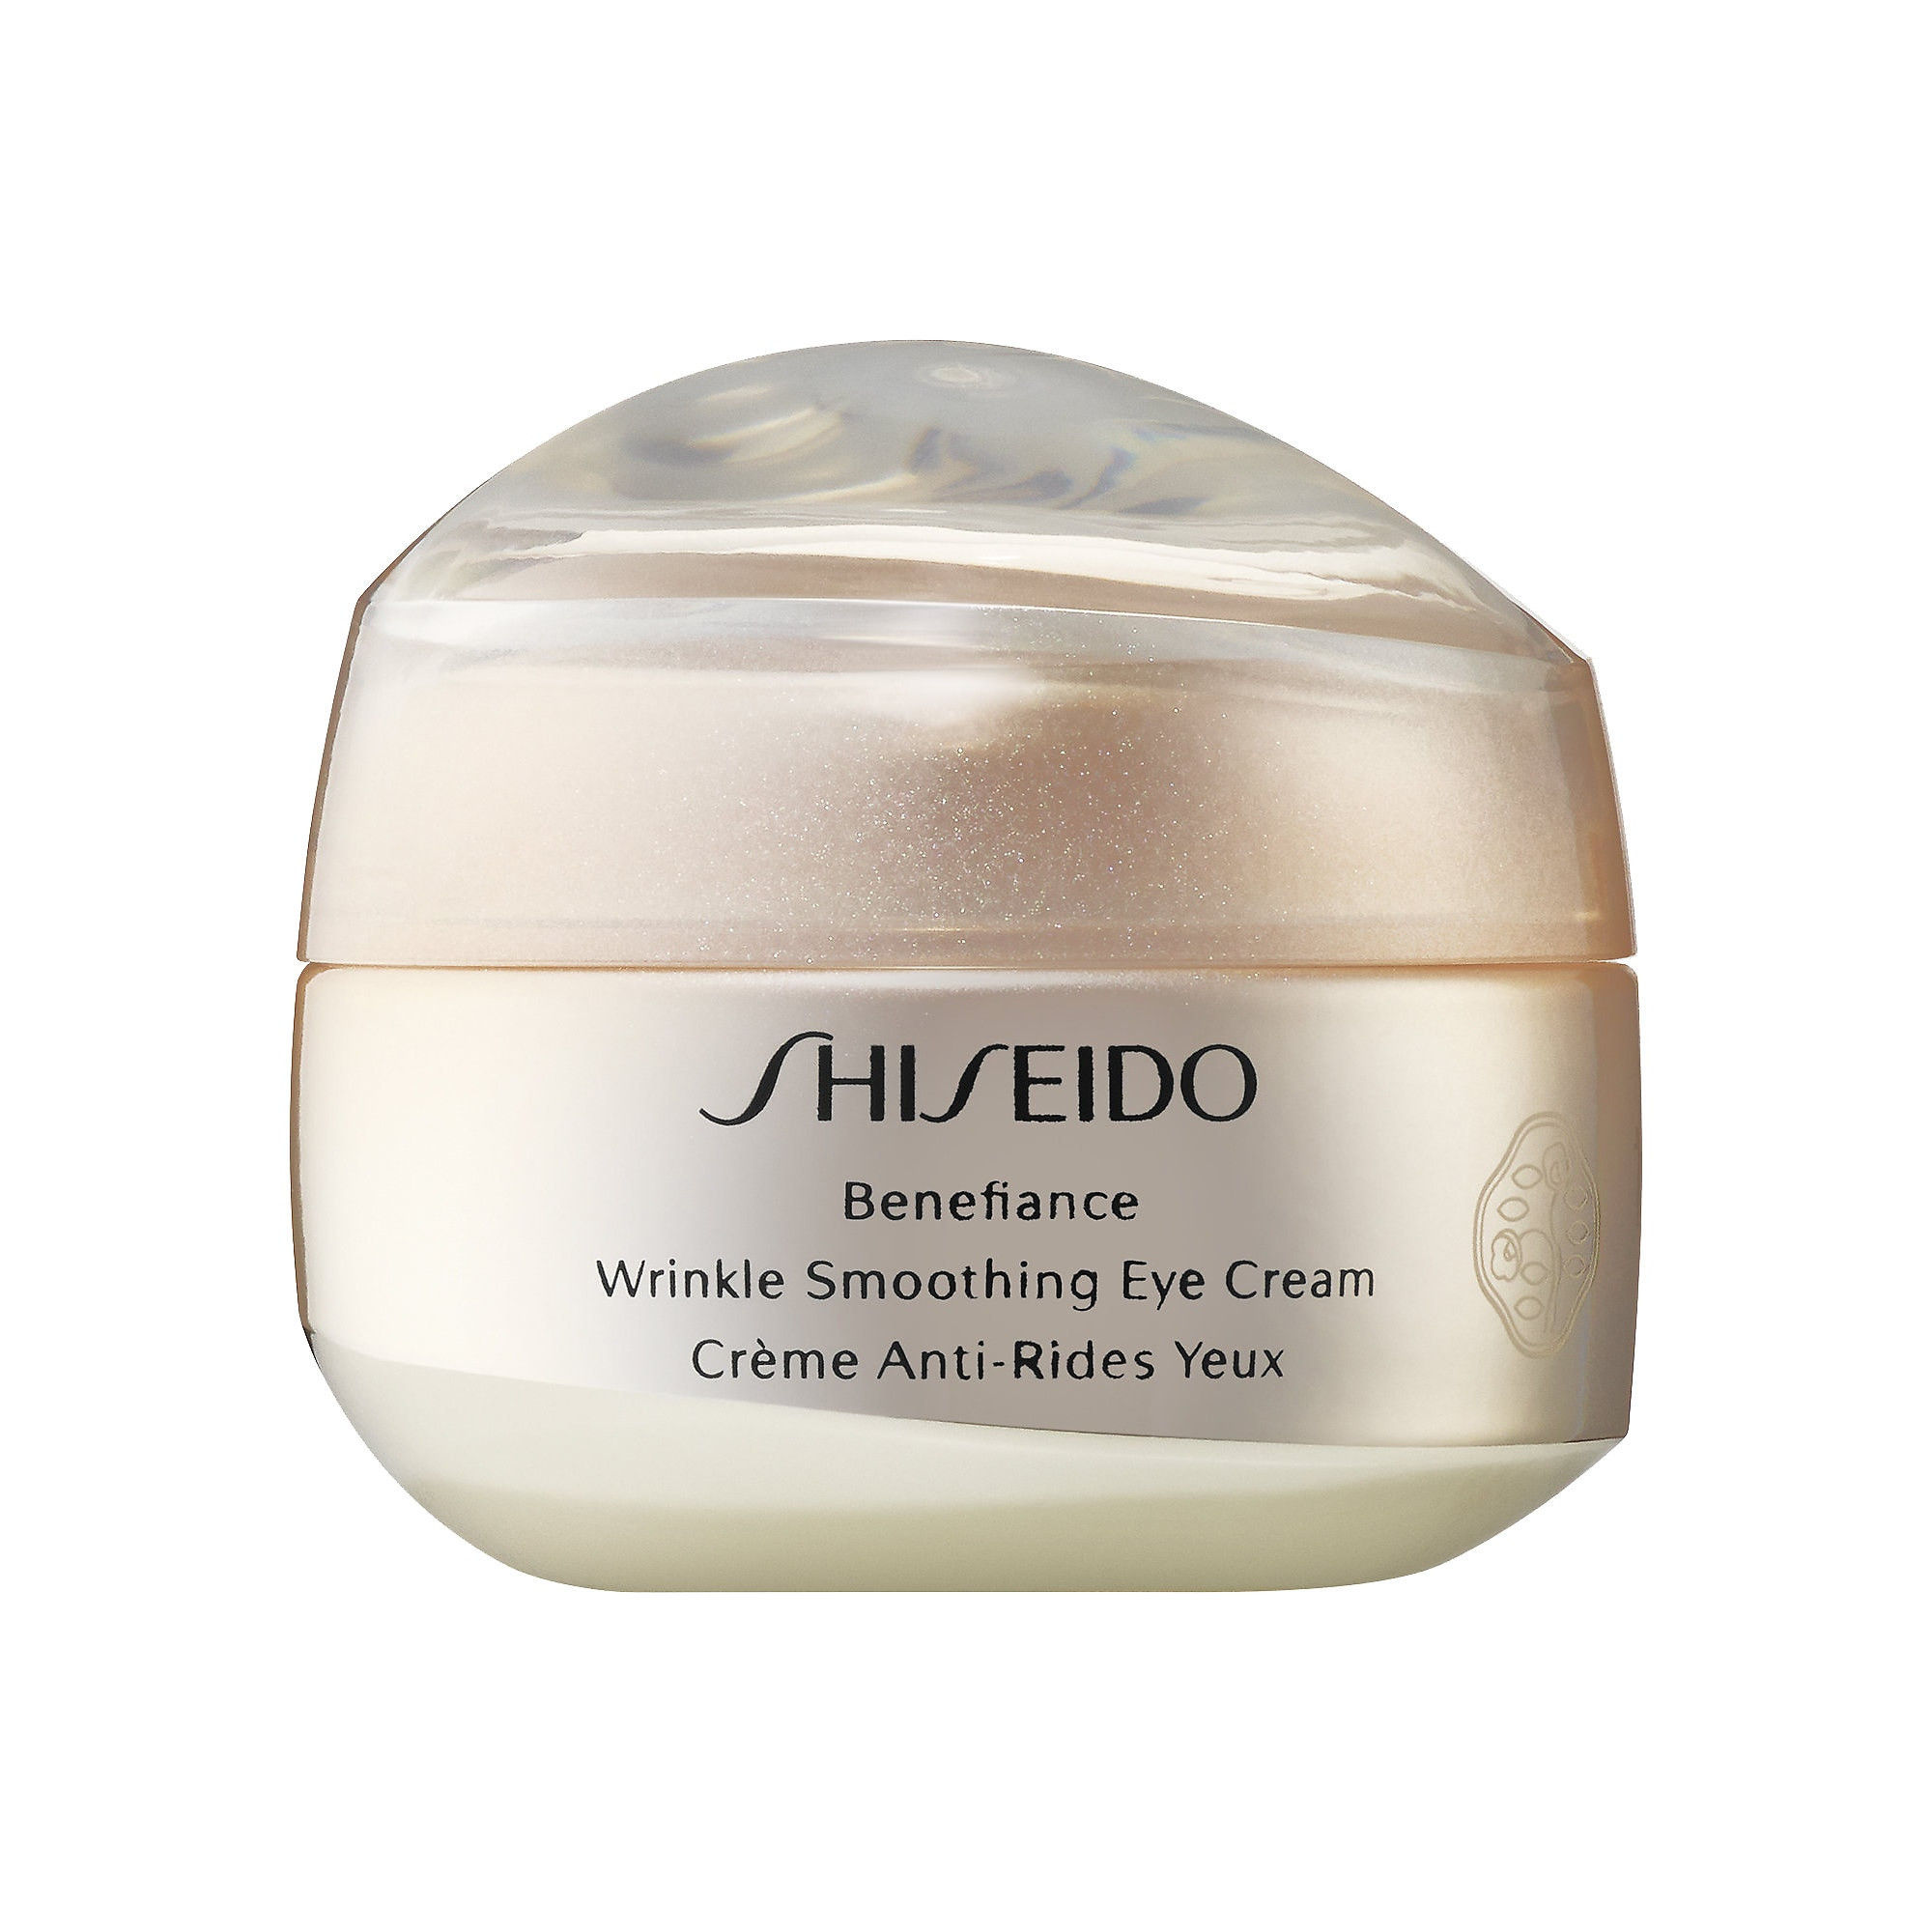 Shiseido benefiance wrinkle. Shiseido Benefiance Eye Cream. Shiseido Benefiance Wrinkle Smoothing Eye Cream. Shiseido Wrinkle Smoothing Cream. Shiseido // крем Benefiance Wrinkle Smoothing Eye Cream 15ml.